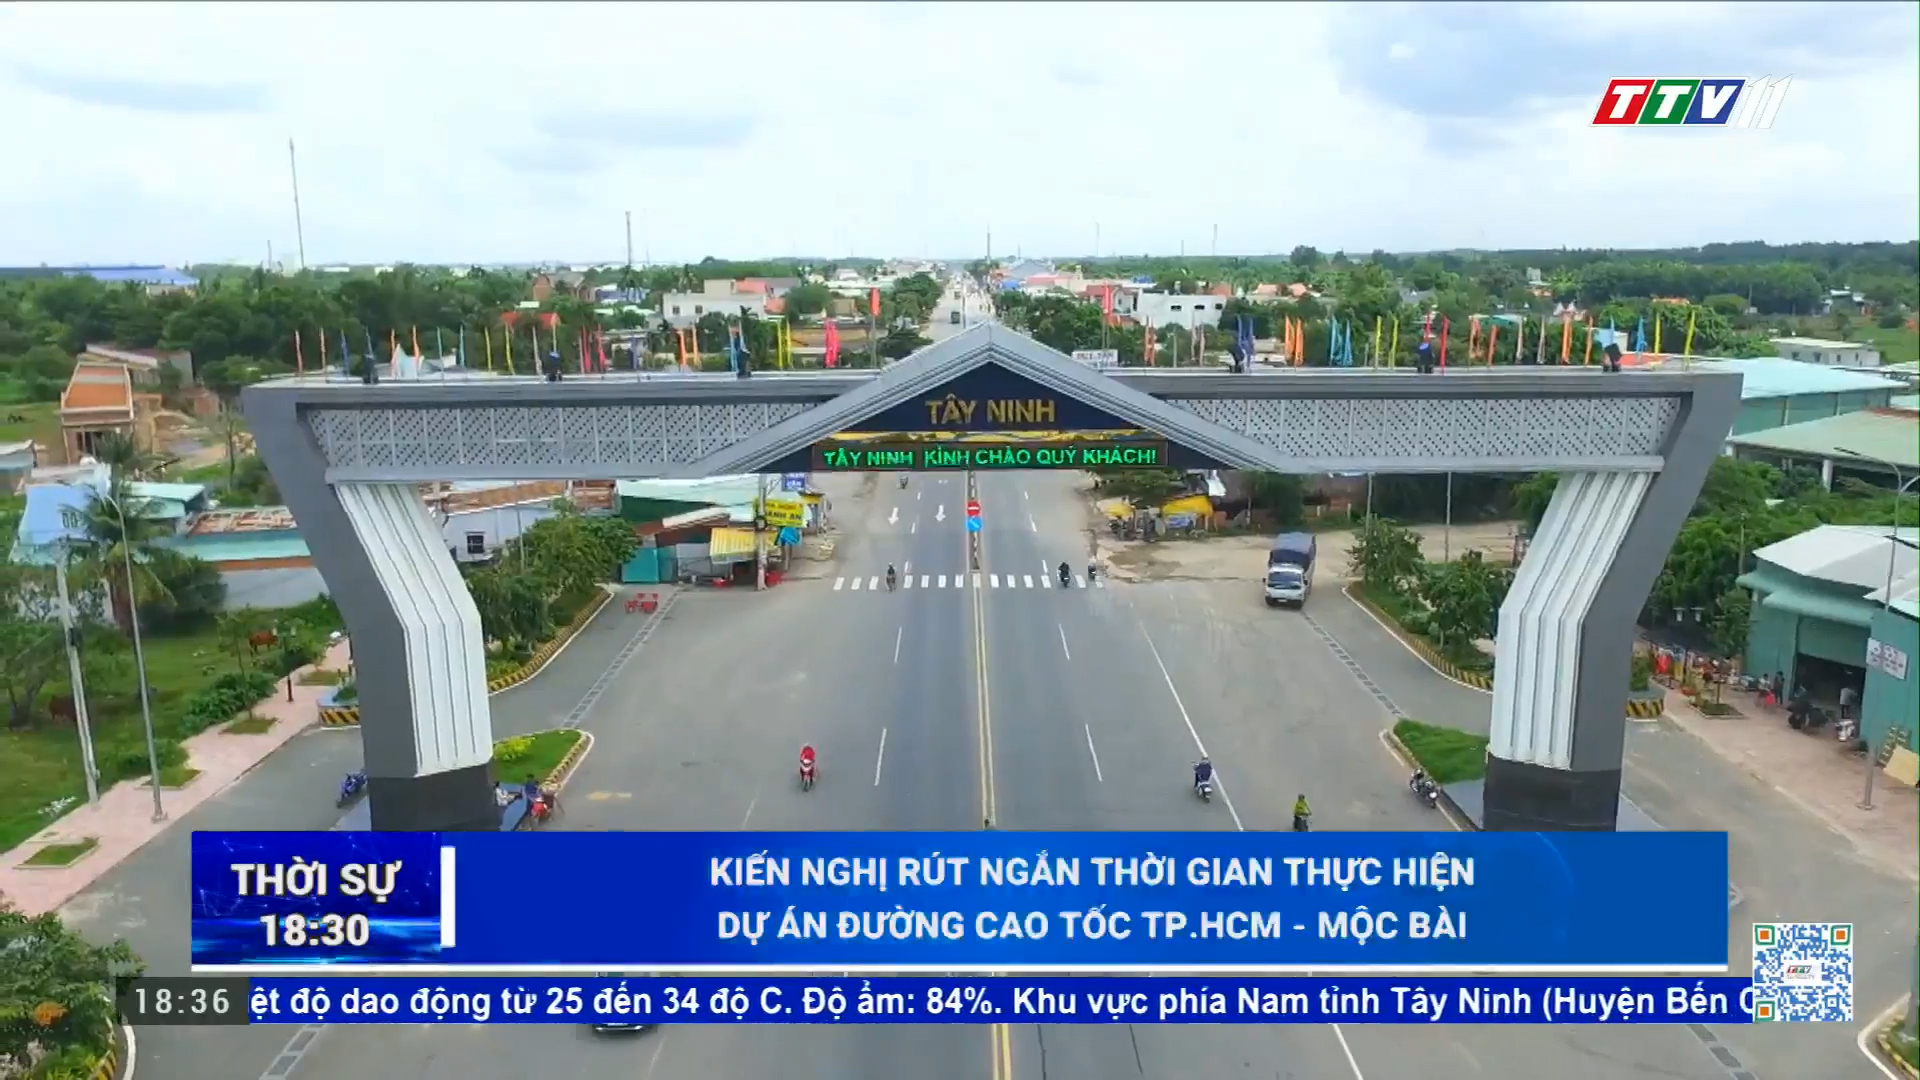 Kiến nghị rút ngắn thời gian thực hiện Dự án đường cao tốc Tp.HCM - Mộc Bài | TayNinhTV